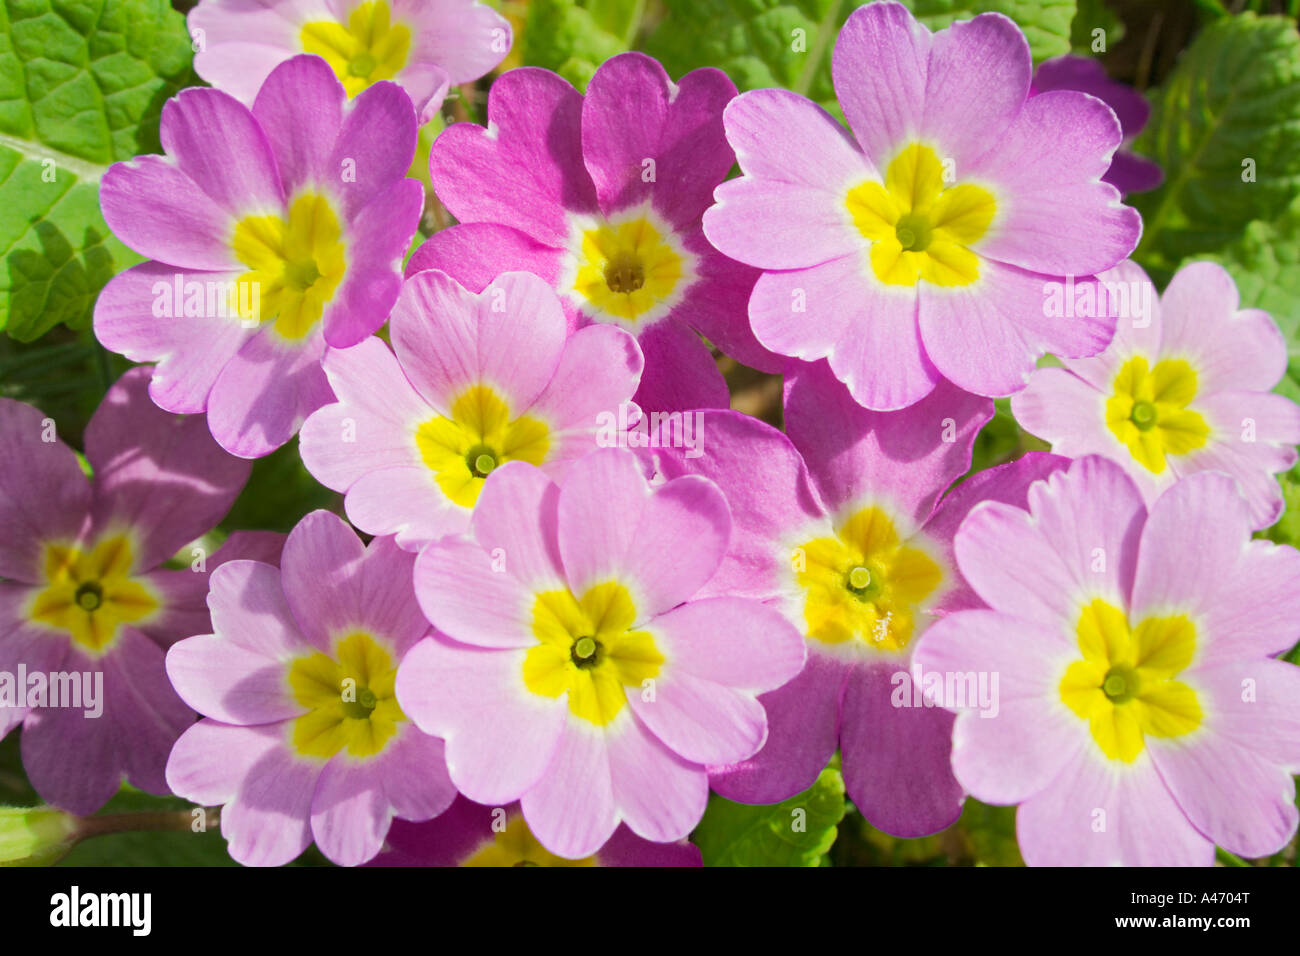 Primroses in a garden Stock Photo